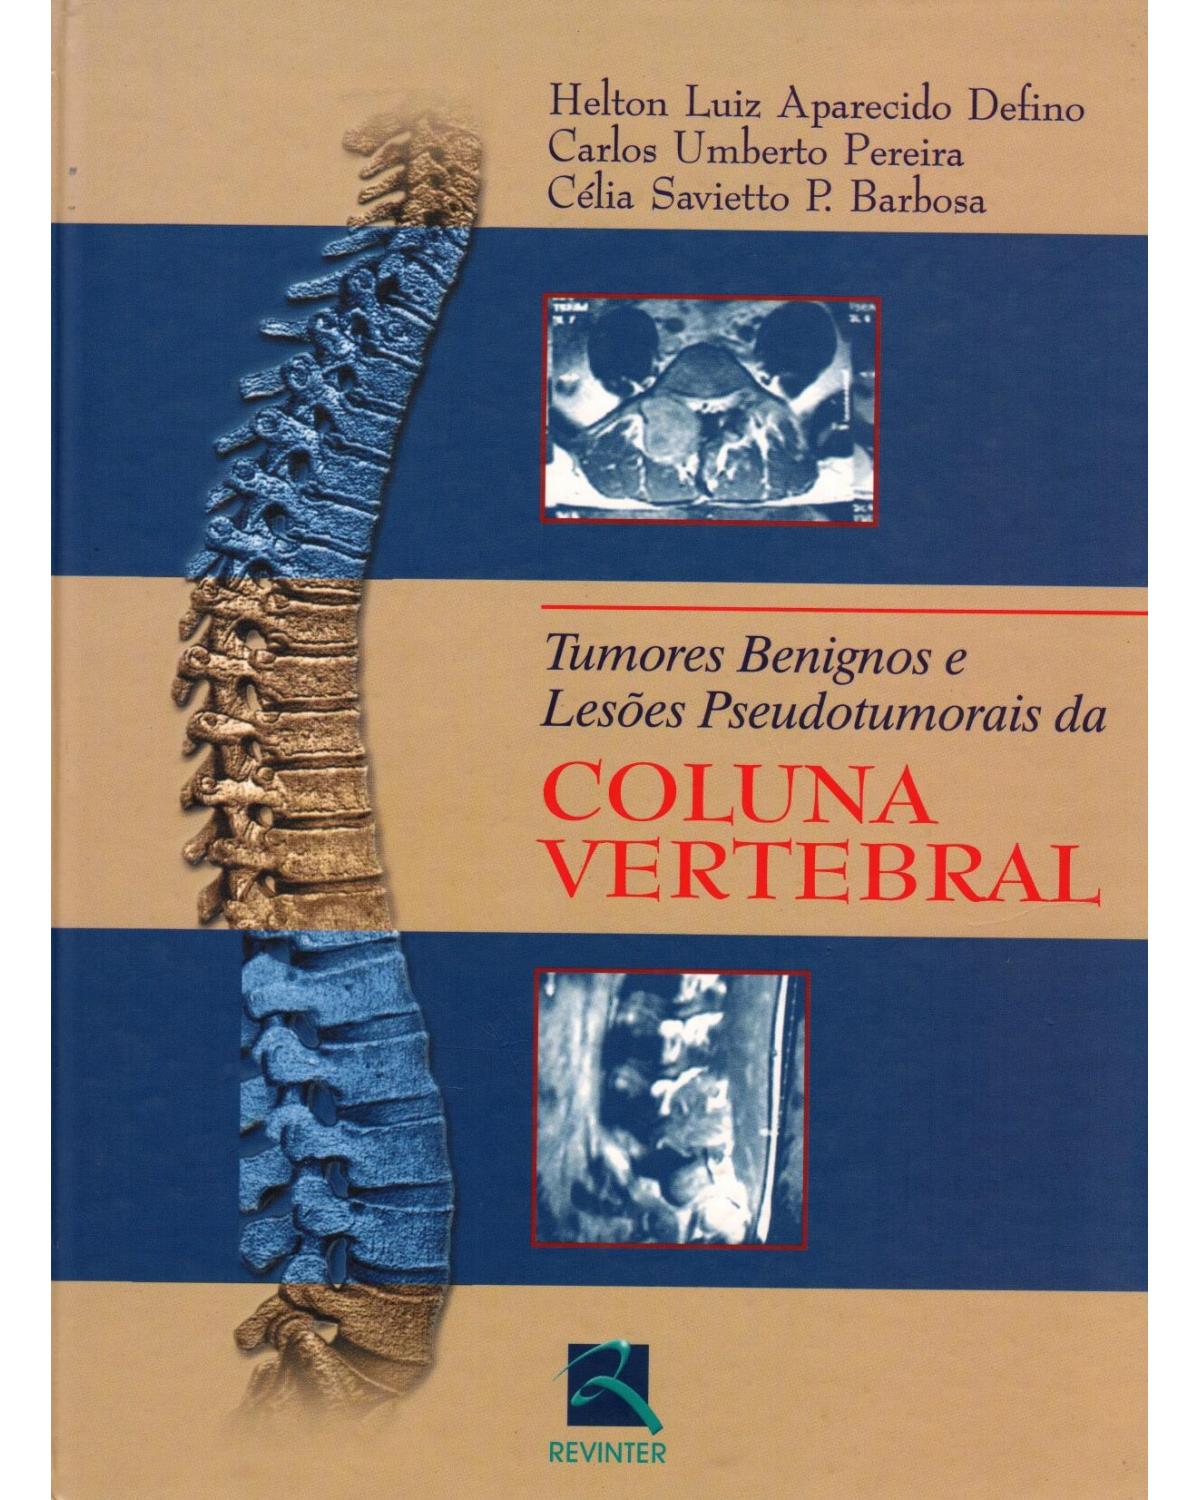 Tumores benignos e lesões pseudotumorais da coluna vertebral - 1ª Edição | 2002